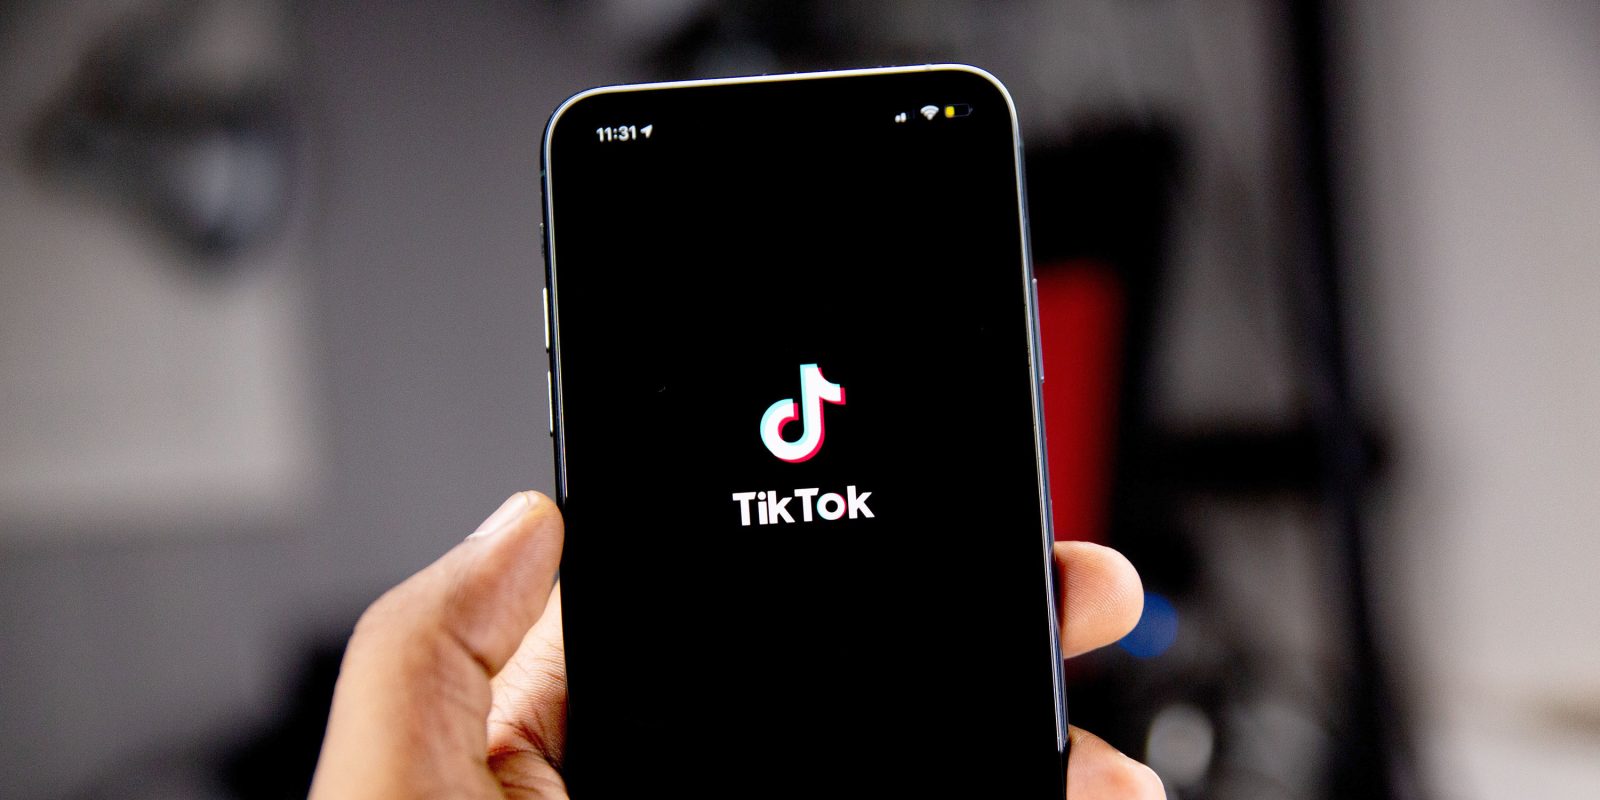 TikTok most popular social app